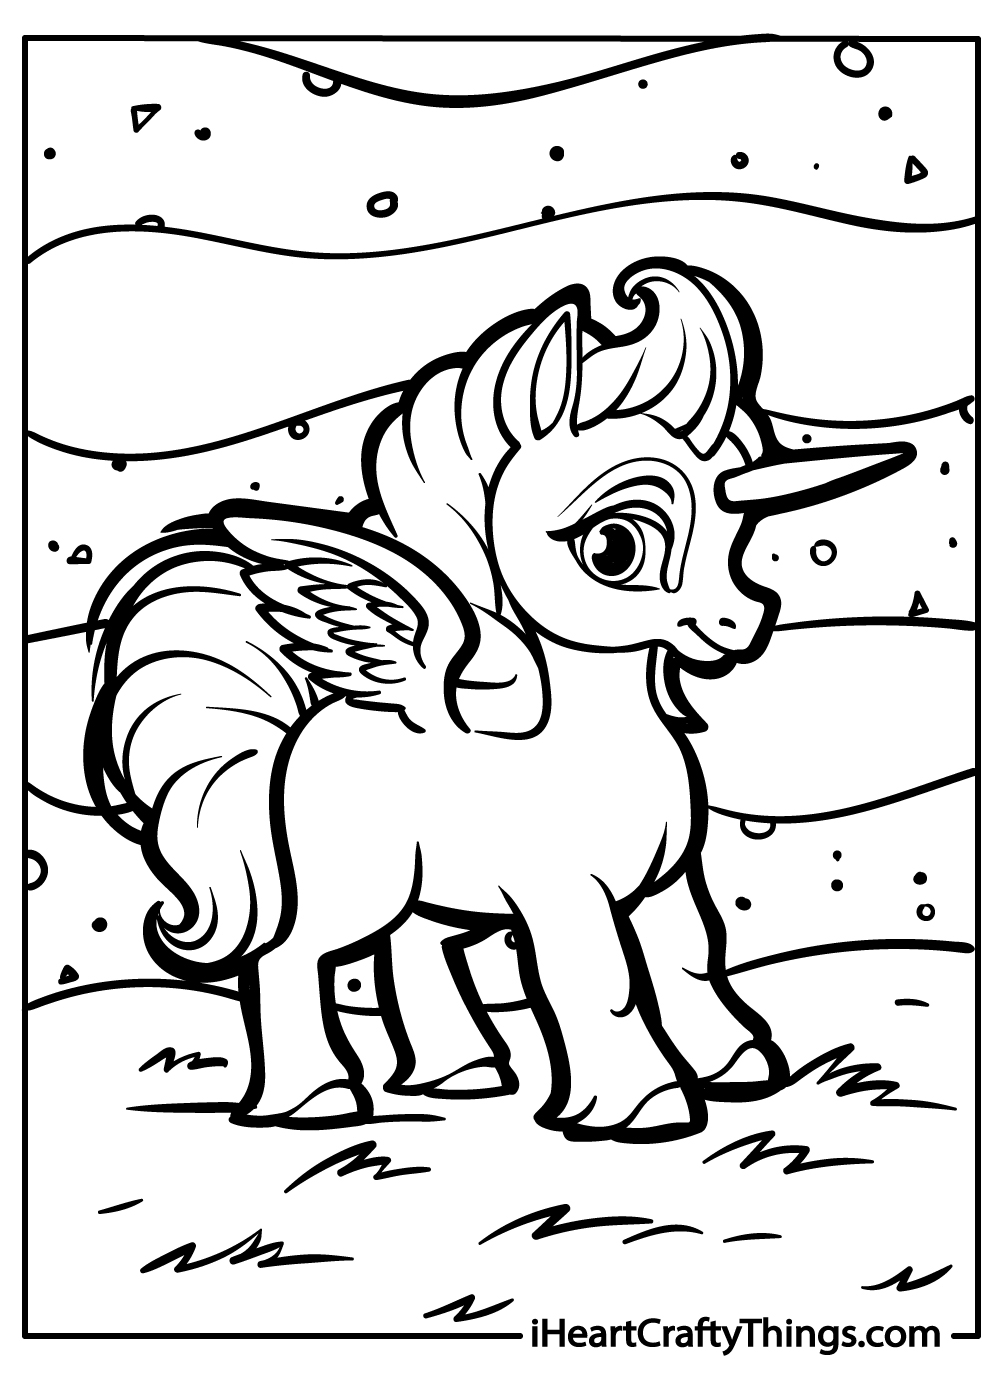 Pegasus coloring printable for kids